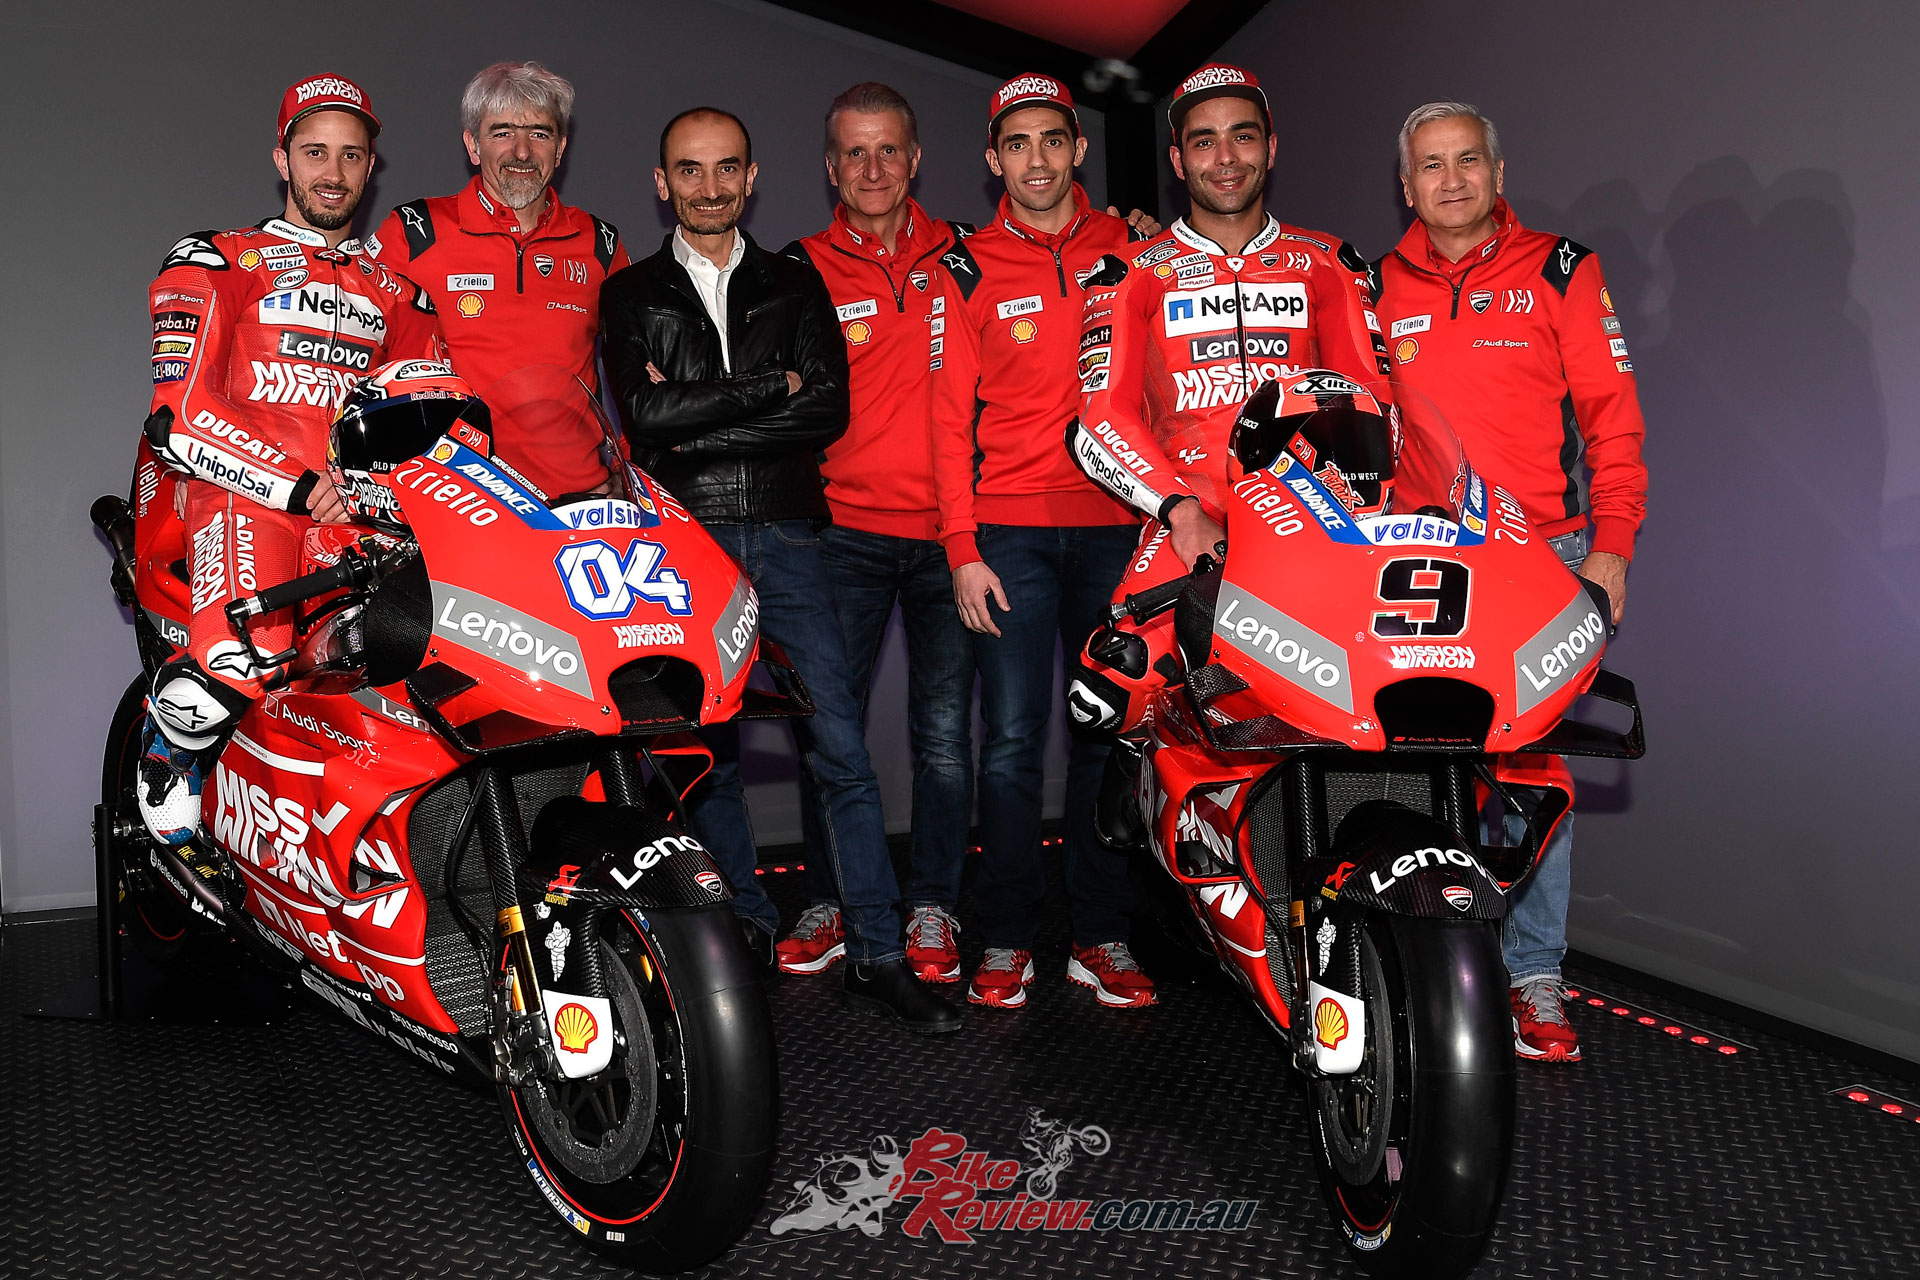 2019 Mission Winnow Ducati team